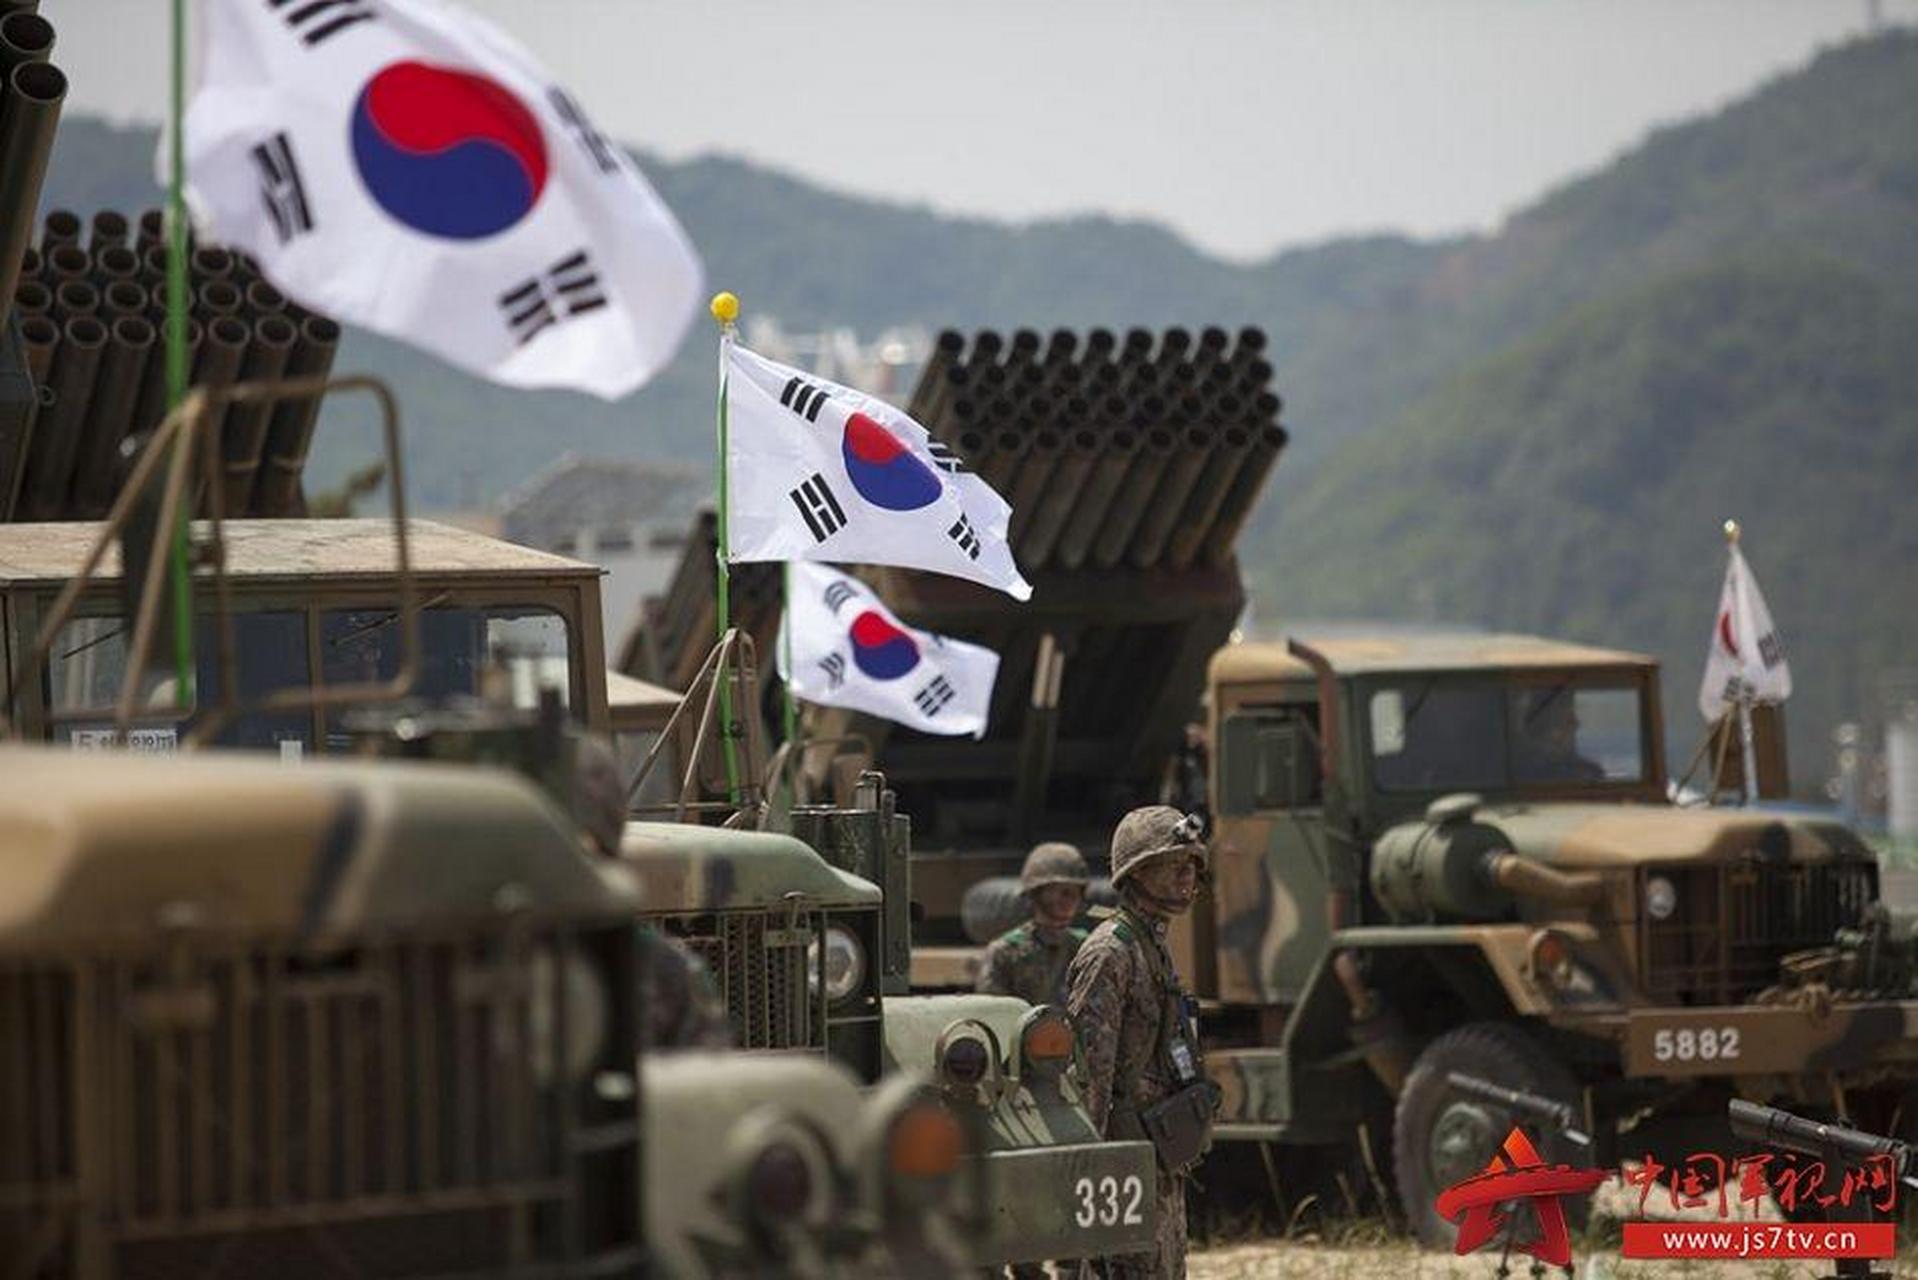 韩国陆军 韩国陆军是韩国最大的军种,拥有大约50万名现役士兵和2屯 